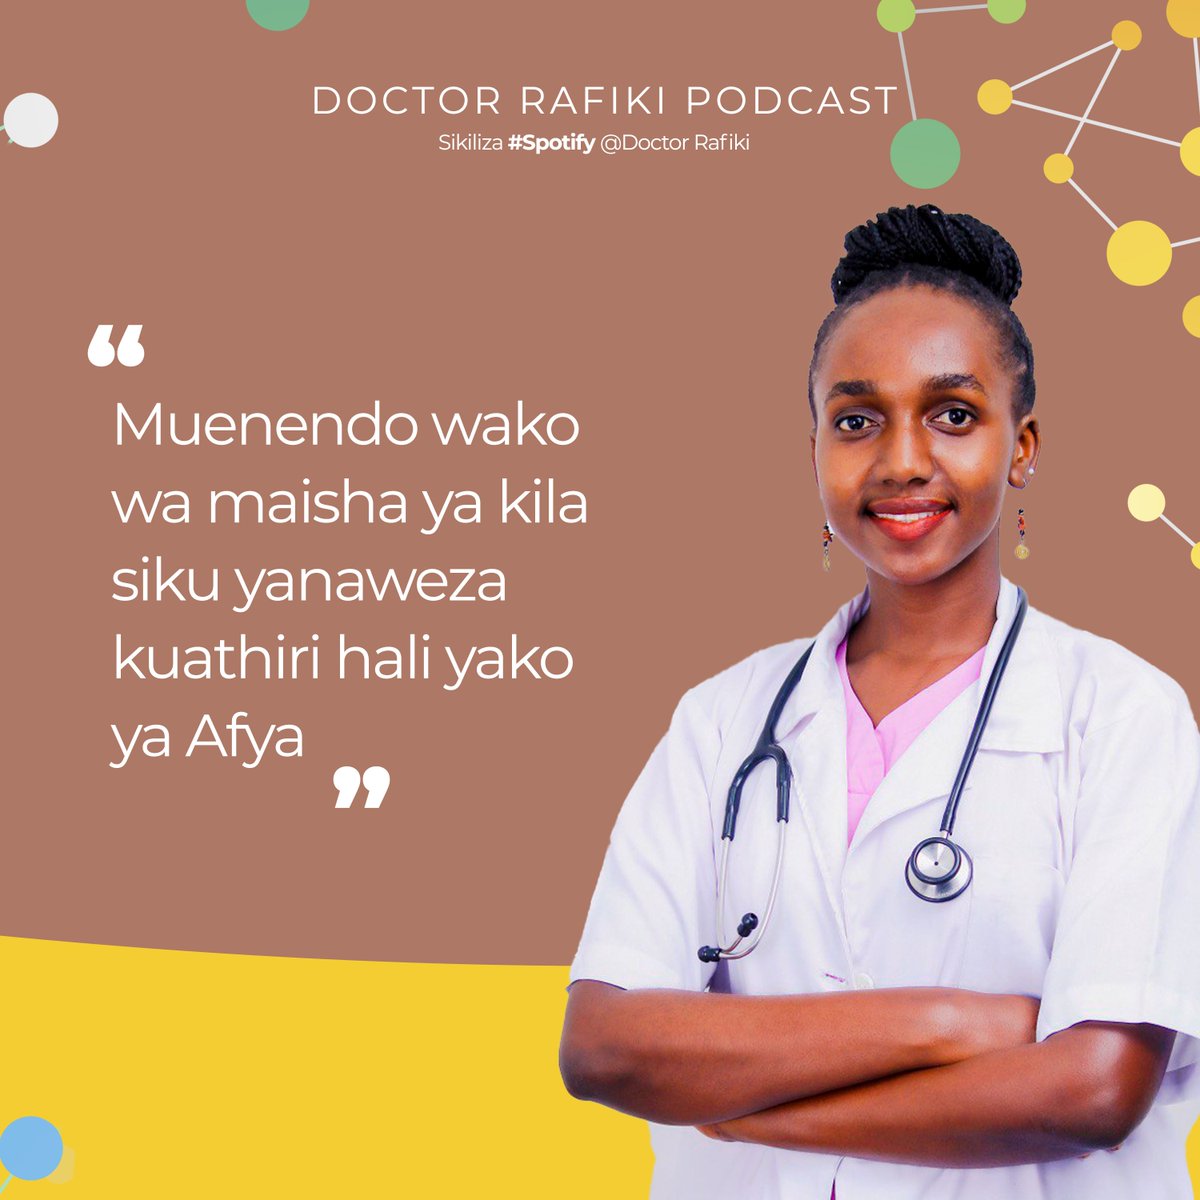 Jifunze zaidi kwa kubonyeza link ifuatayo: open.spotify.com/episode/0FrBSo… #DoctorRafiki #Spotify #ApplePodcast @JuliethSebbaMD